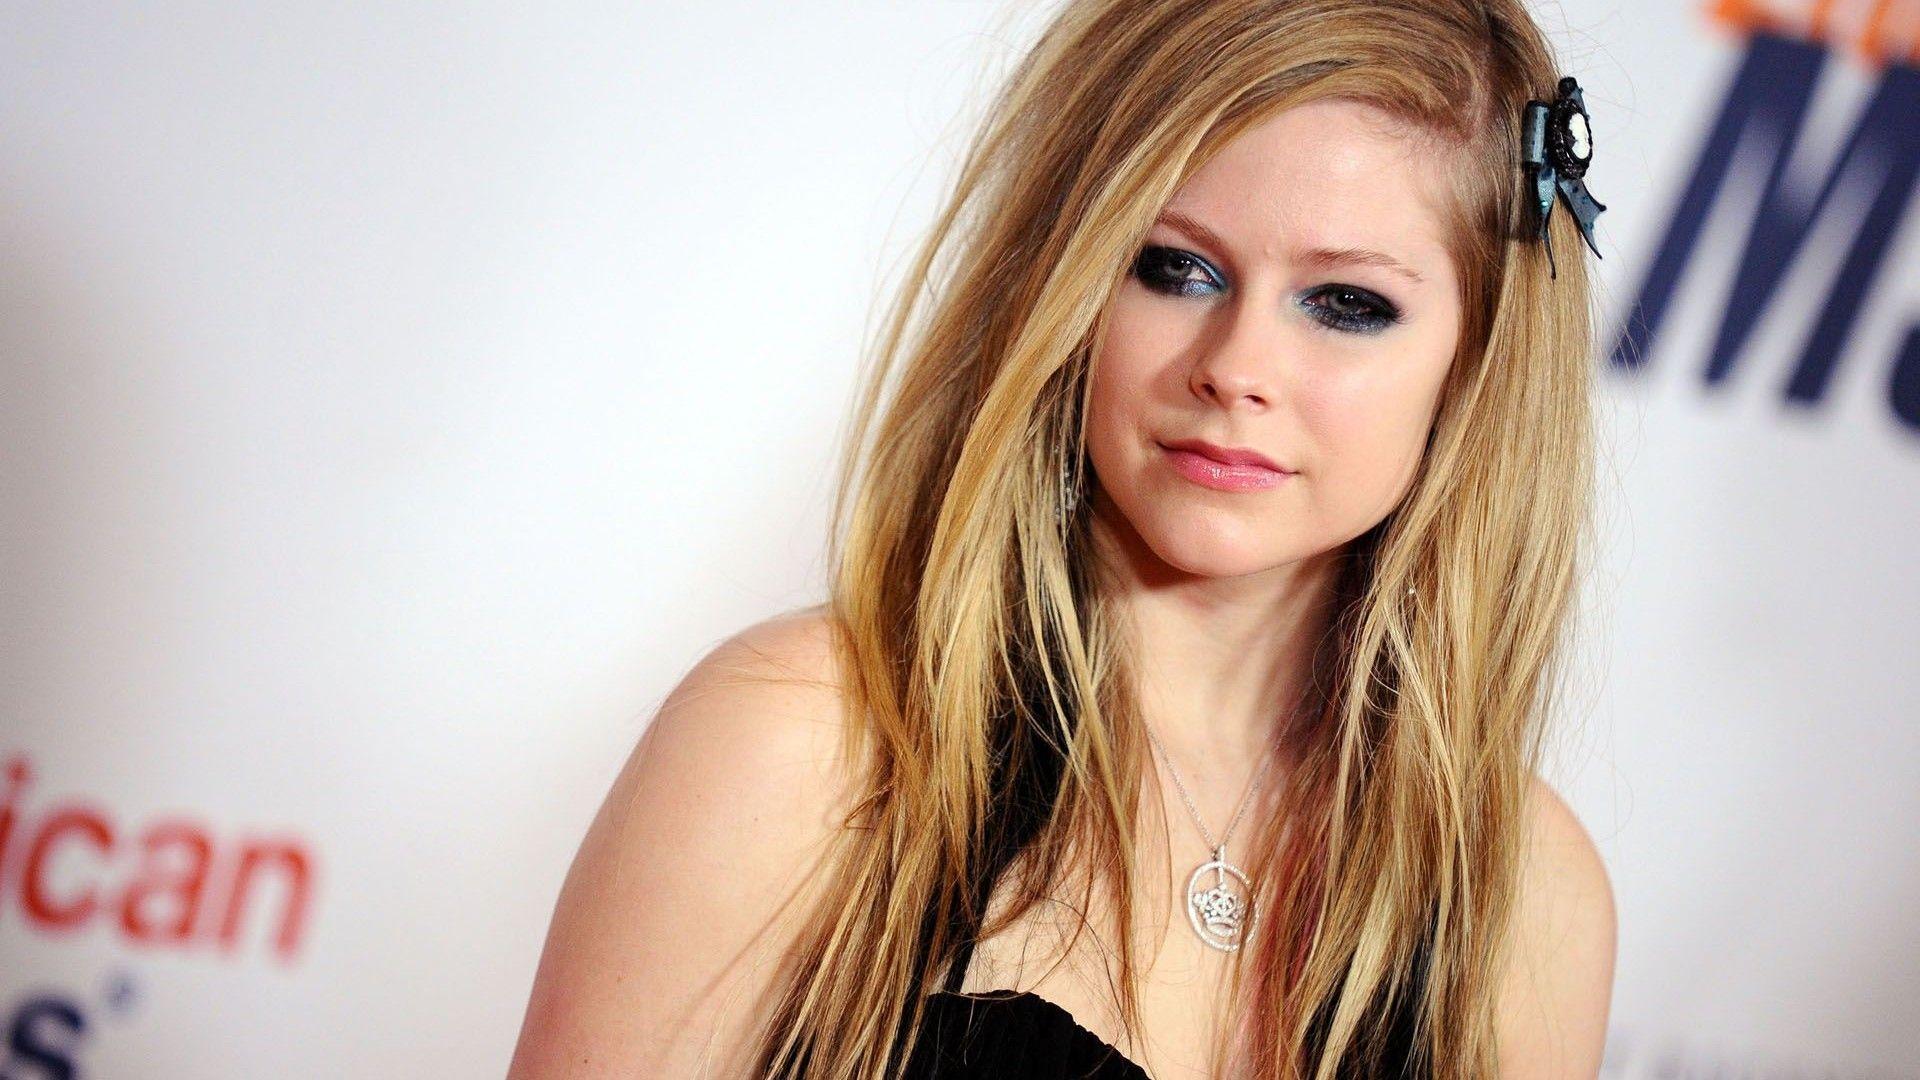 Avril Lavigne 2014 Wallpaper Best Wallpaper. High